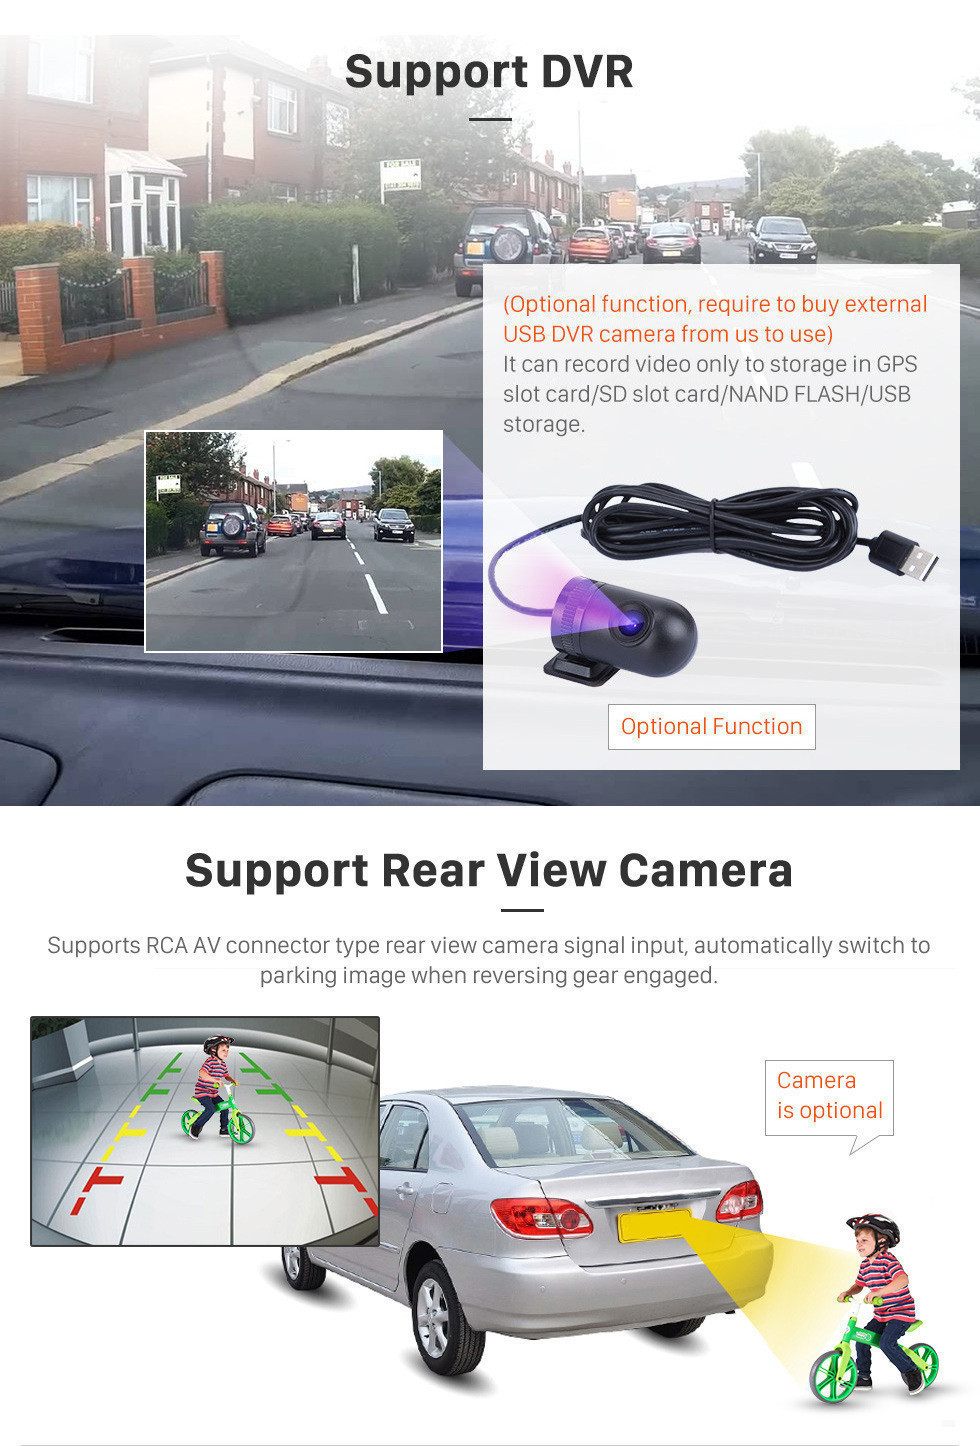 Seicane 9 polegadas Android 11.0 2016 Jeep Renegade HD Touch Screen Radio Sistema de navegação GPS Suporte WIFI 3G Bluetooth Música USB OBD2 AUX Câmera de backup DVR Controle de volante